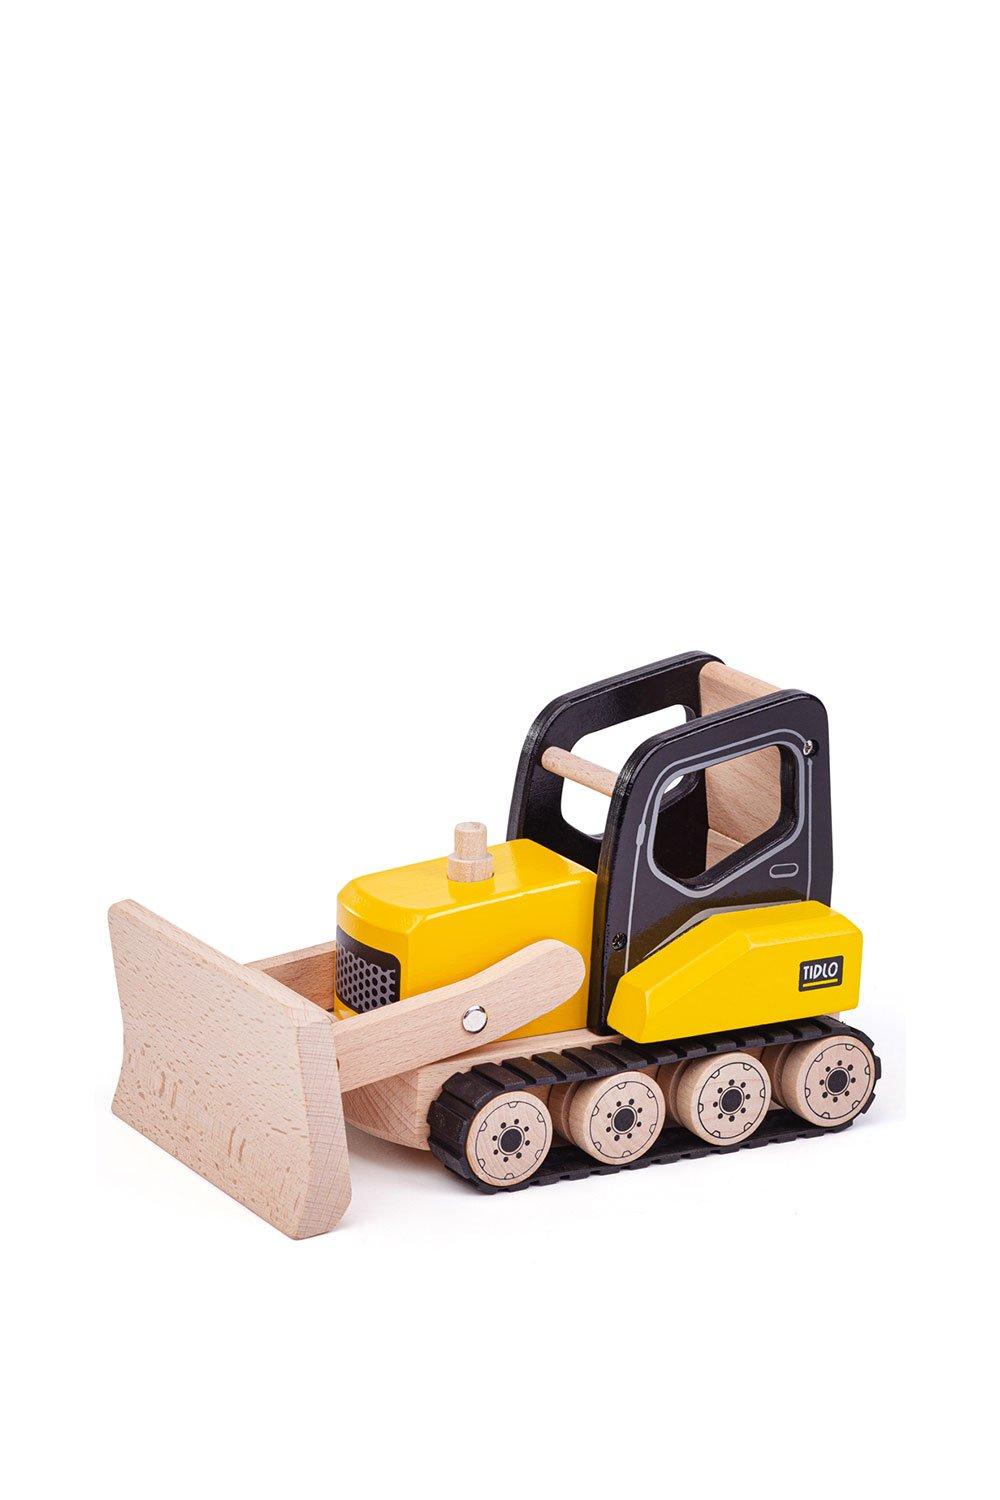 Tidlo Bulldozer Toy|yellow